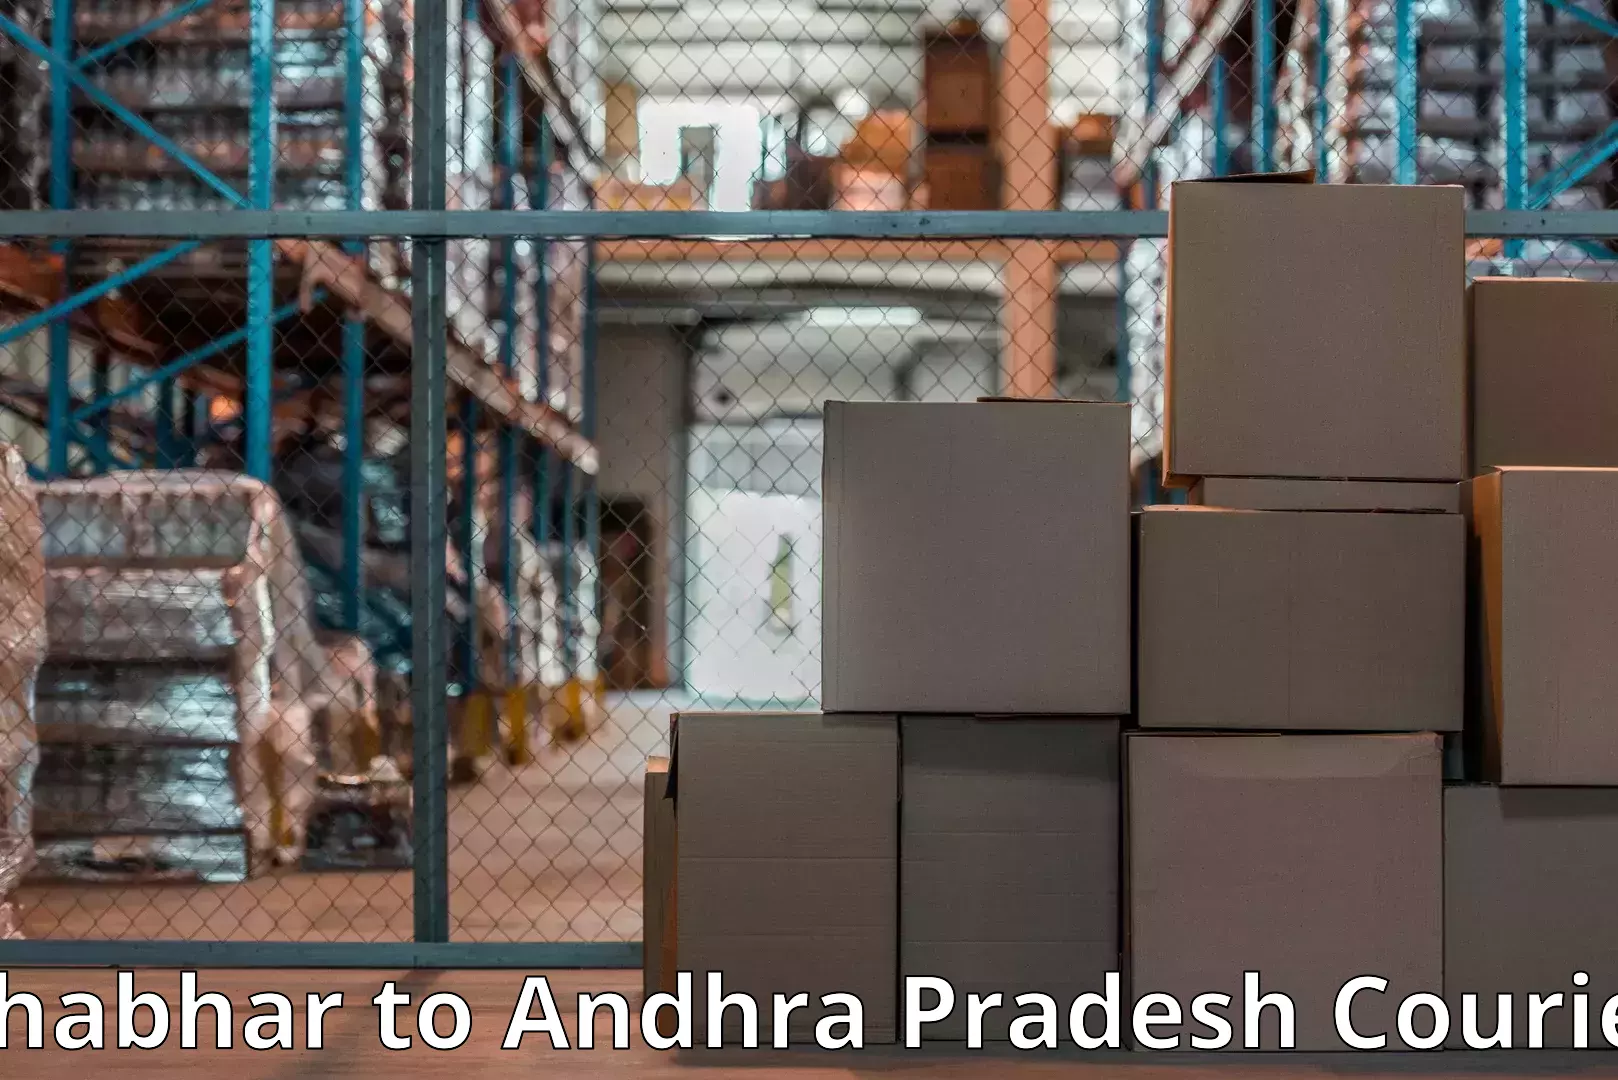 Home goods moving company Bhabhar to Andhra Pradesh